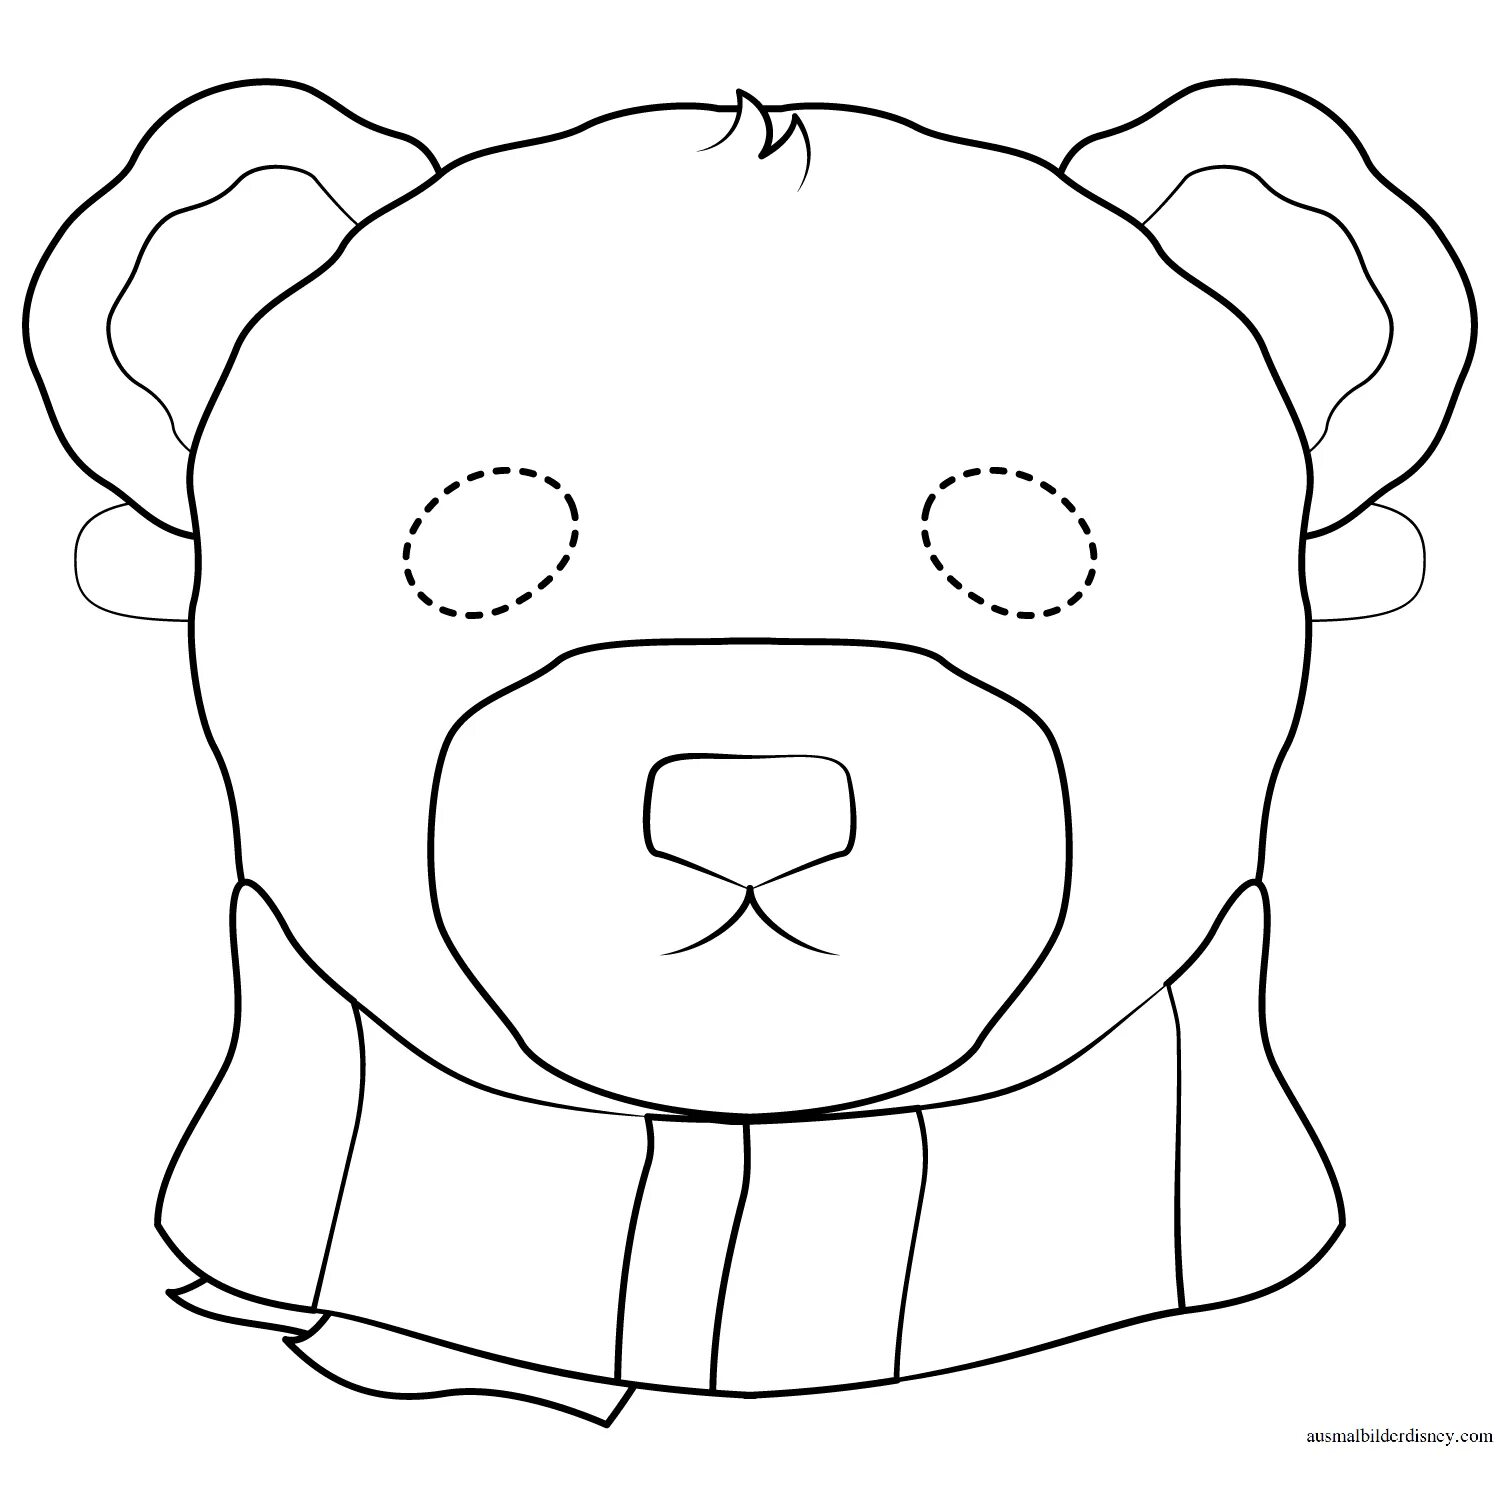 Bear face #3